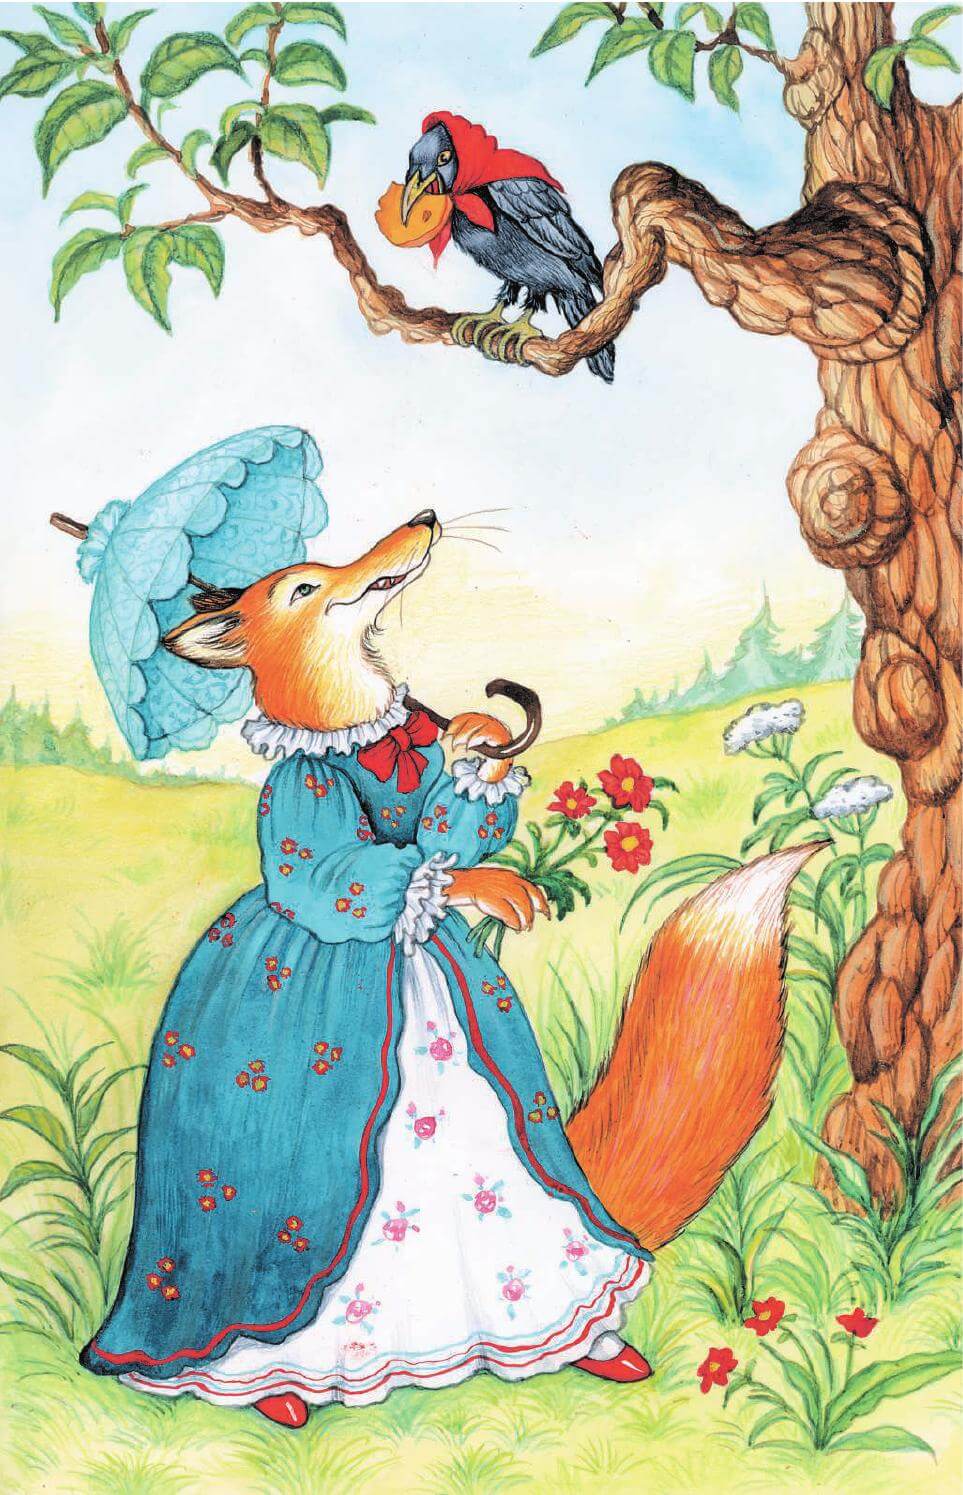 Ilustração de uma raposa olhando e desejando o queijo que está na boca de um corvo no alto de uma árvore - fábula o corvo e a raposa. Fábulas Infantis